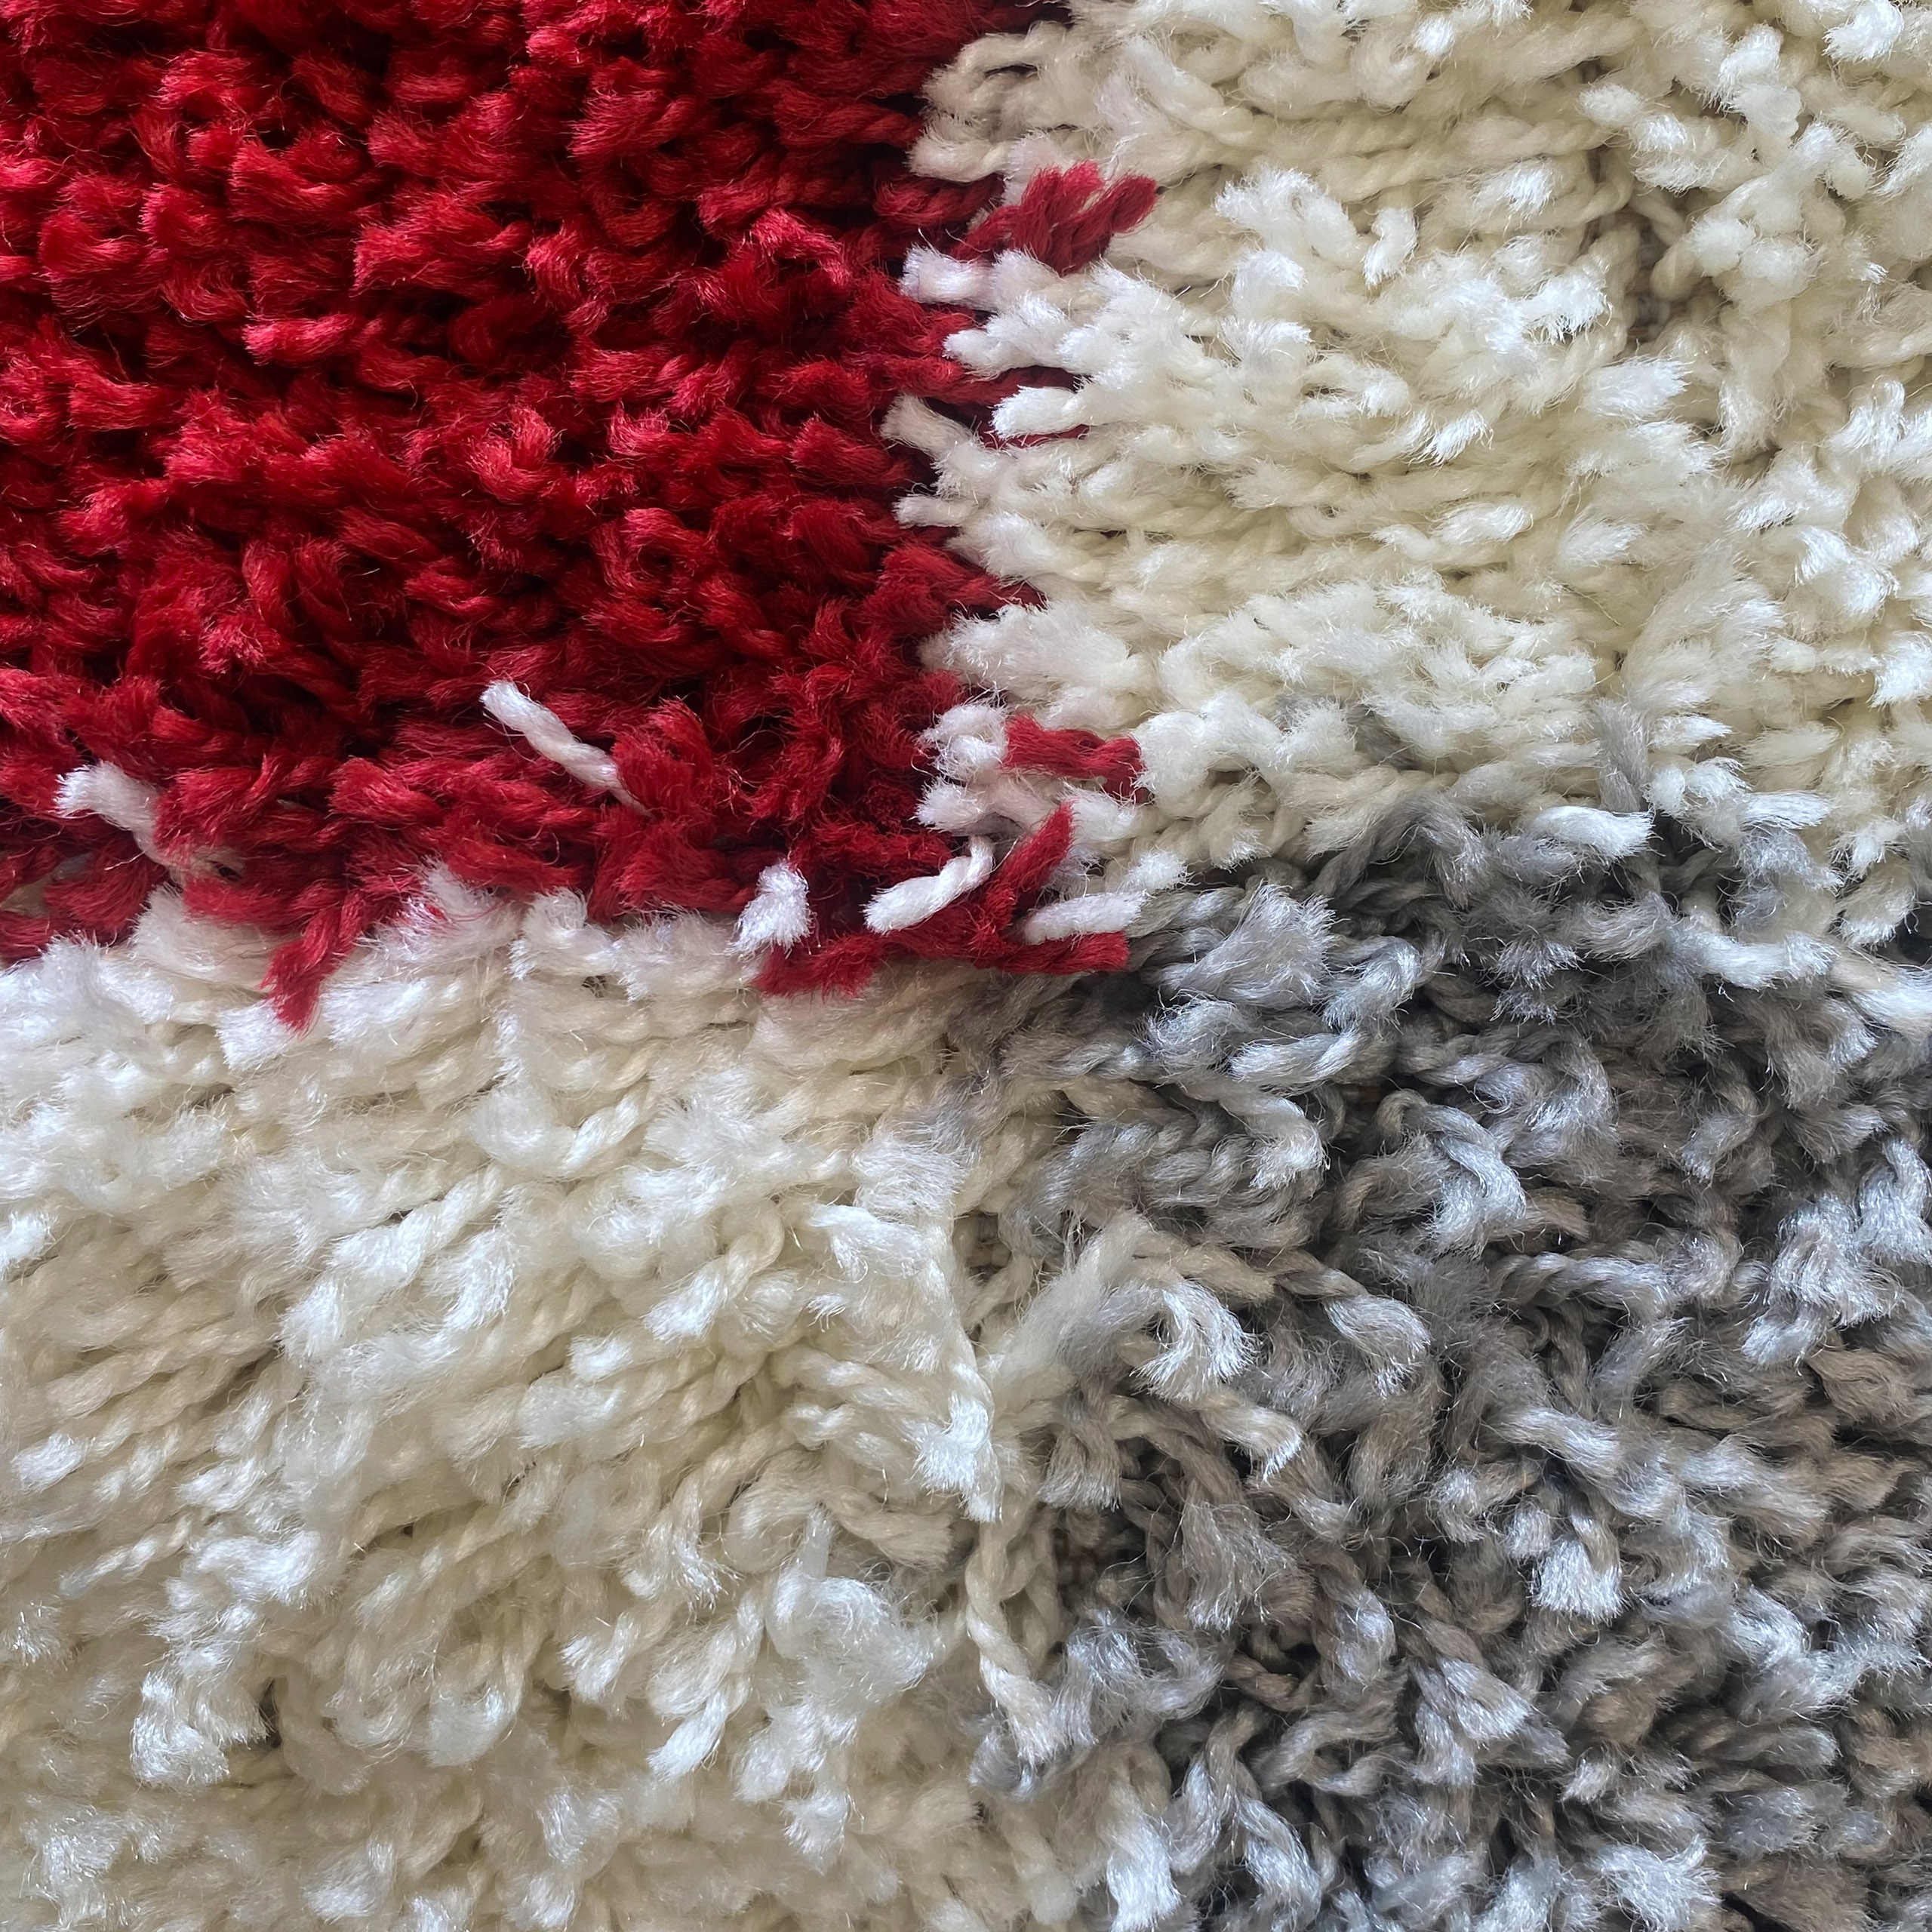 quality, & fair fair & online: carpets Teppich-Traum shop pile Shaggy High Good quality, shop - carpets prices online: pricesHigh Good pile Shaggy